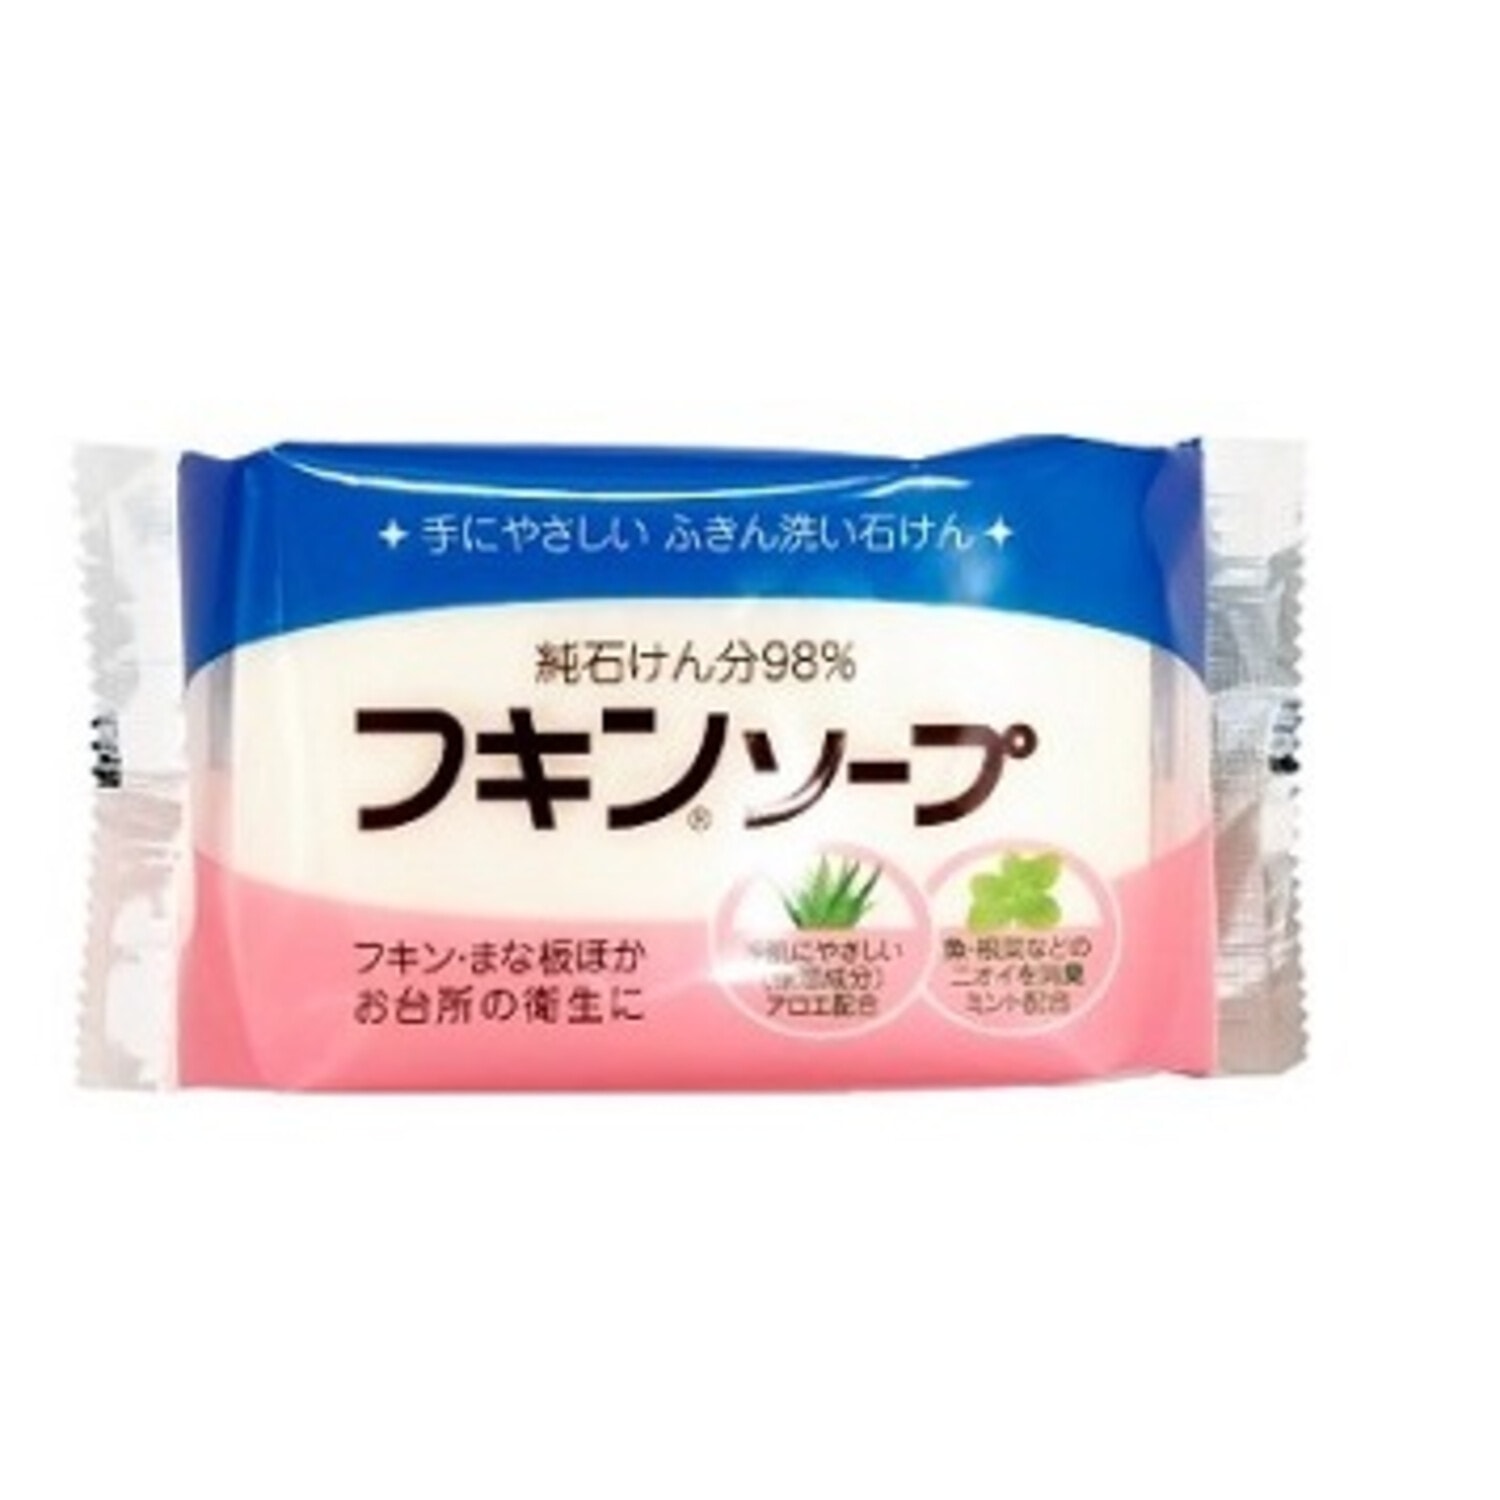 Kaneyo Японское мыло для удаления масляных пятен, 135 г/ 599121